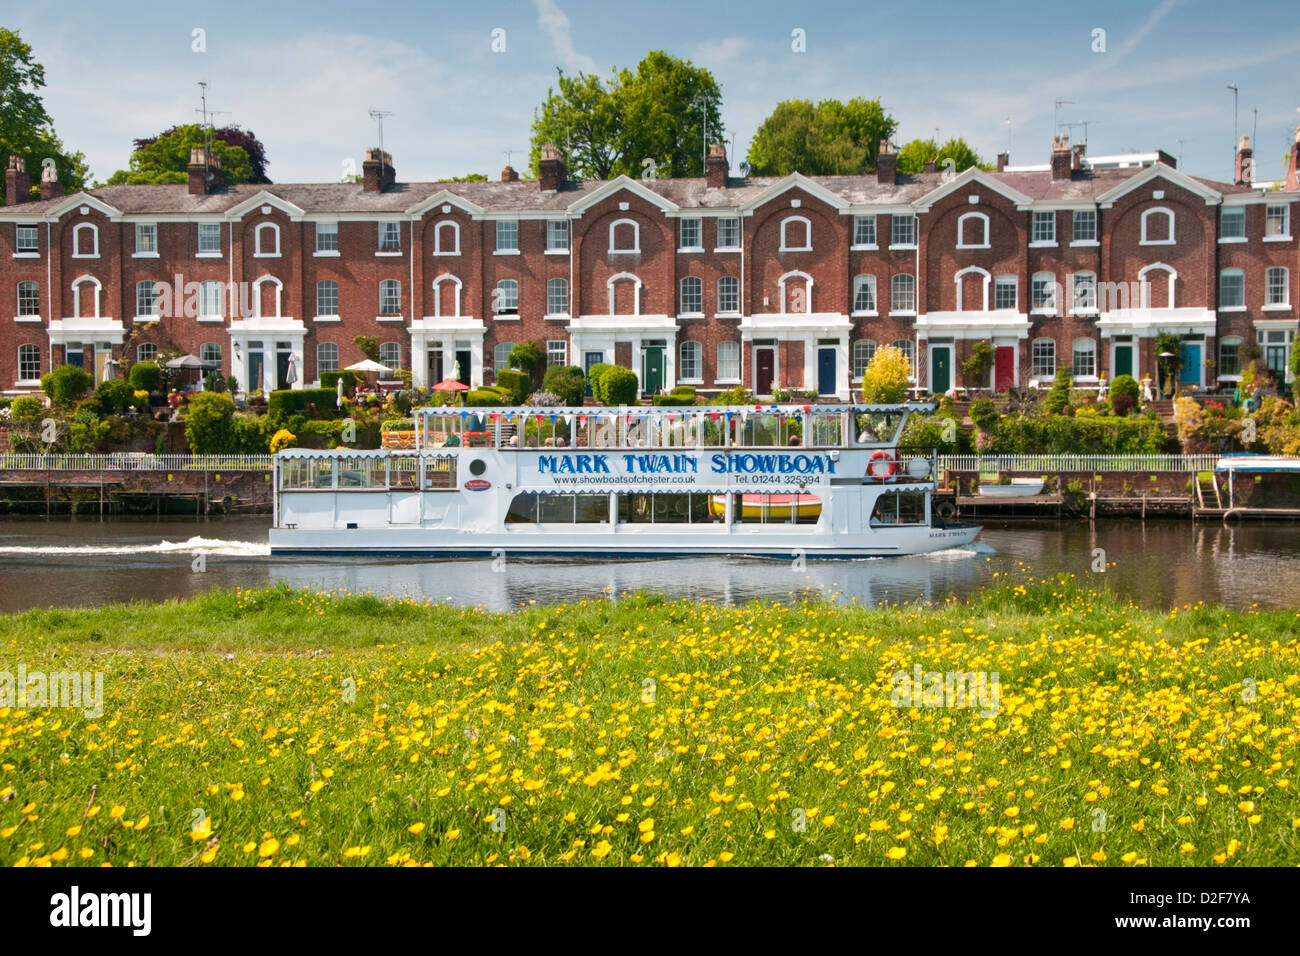 Mark Twain Tourboat sur la rivière Dee dans le ressort de l'Meadows, Chester, Cheshire, Angleterre, RU Banque D'Images